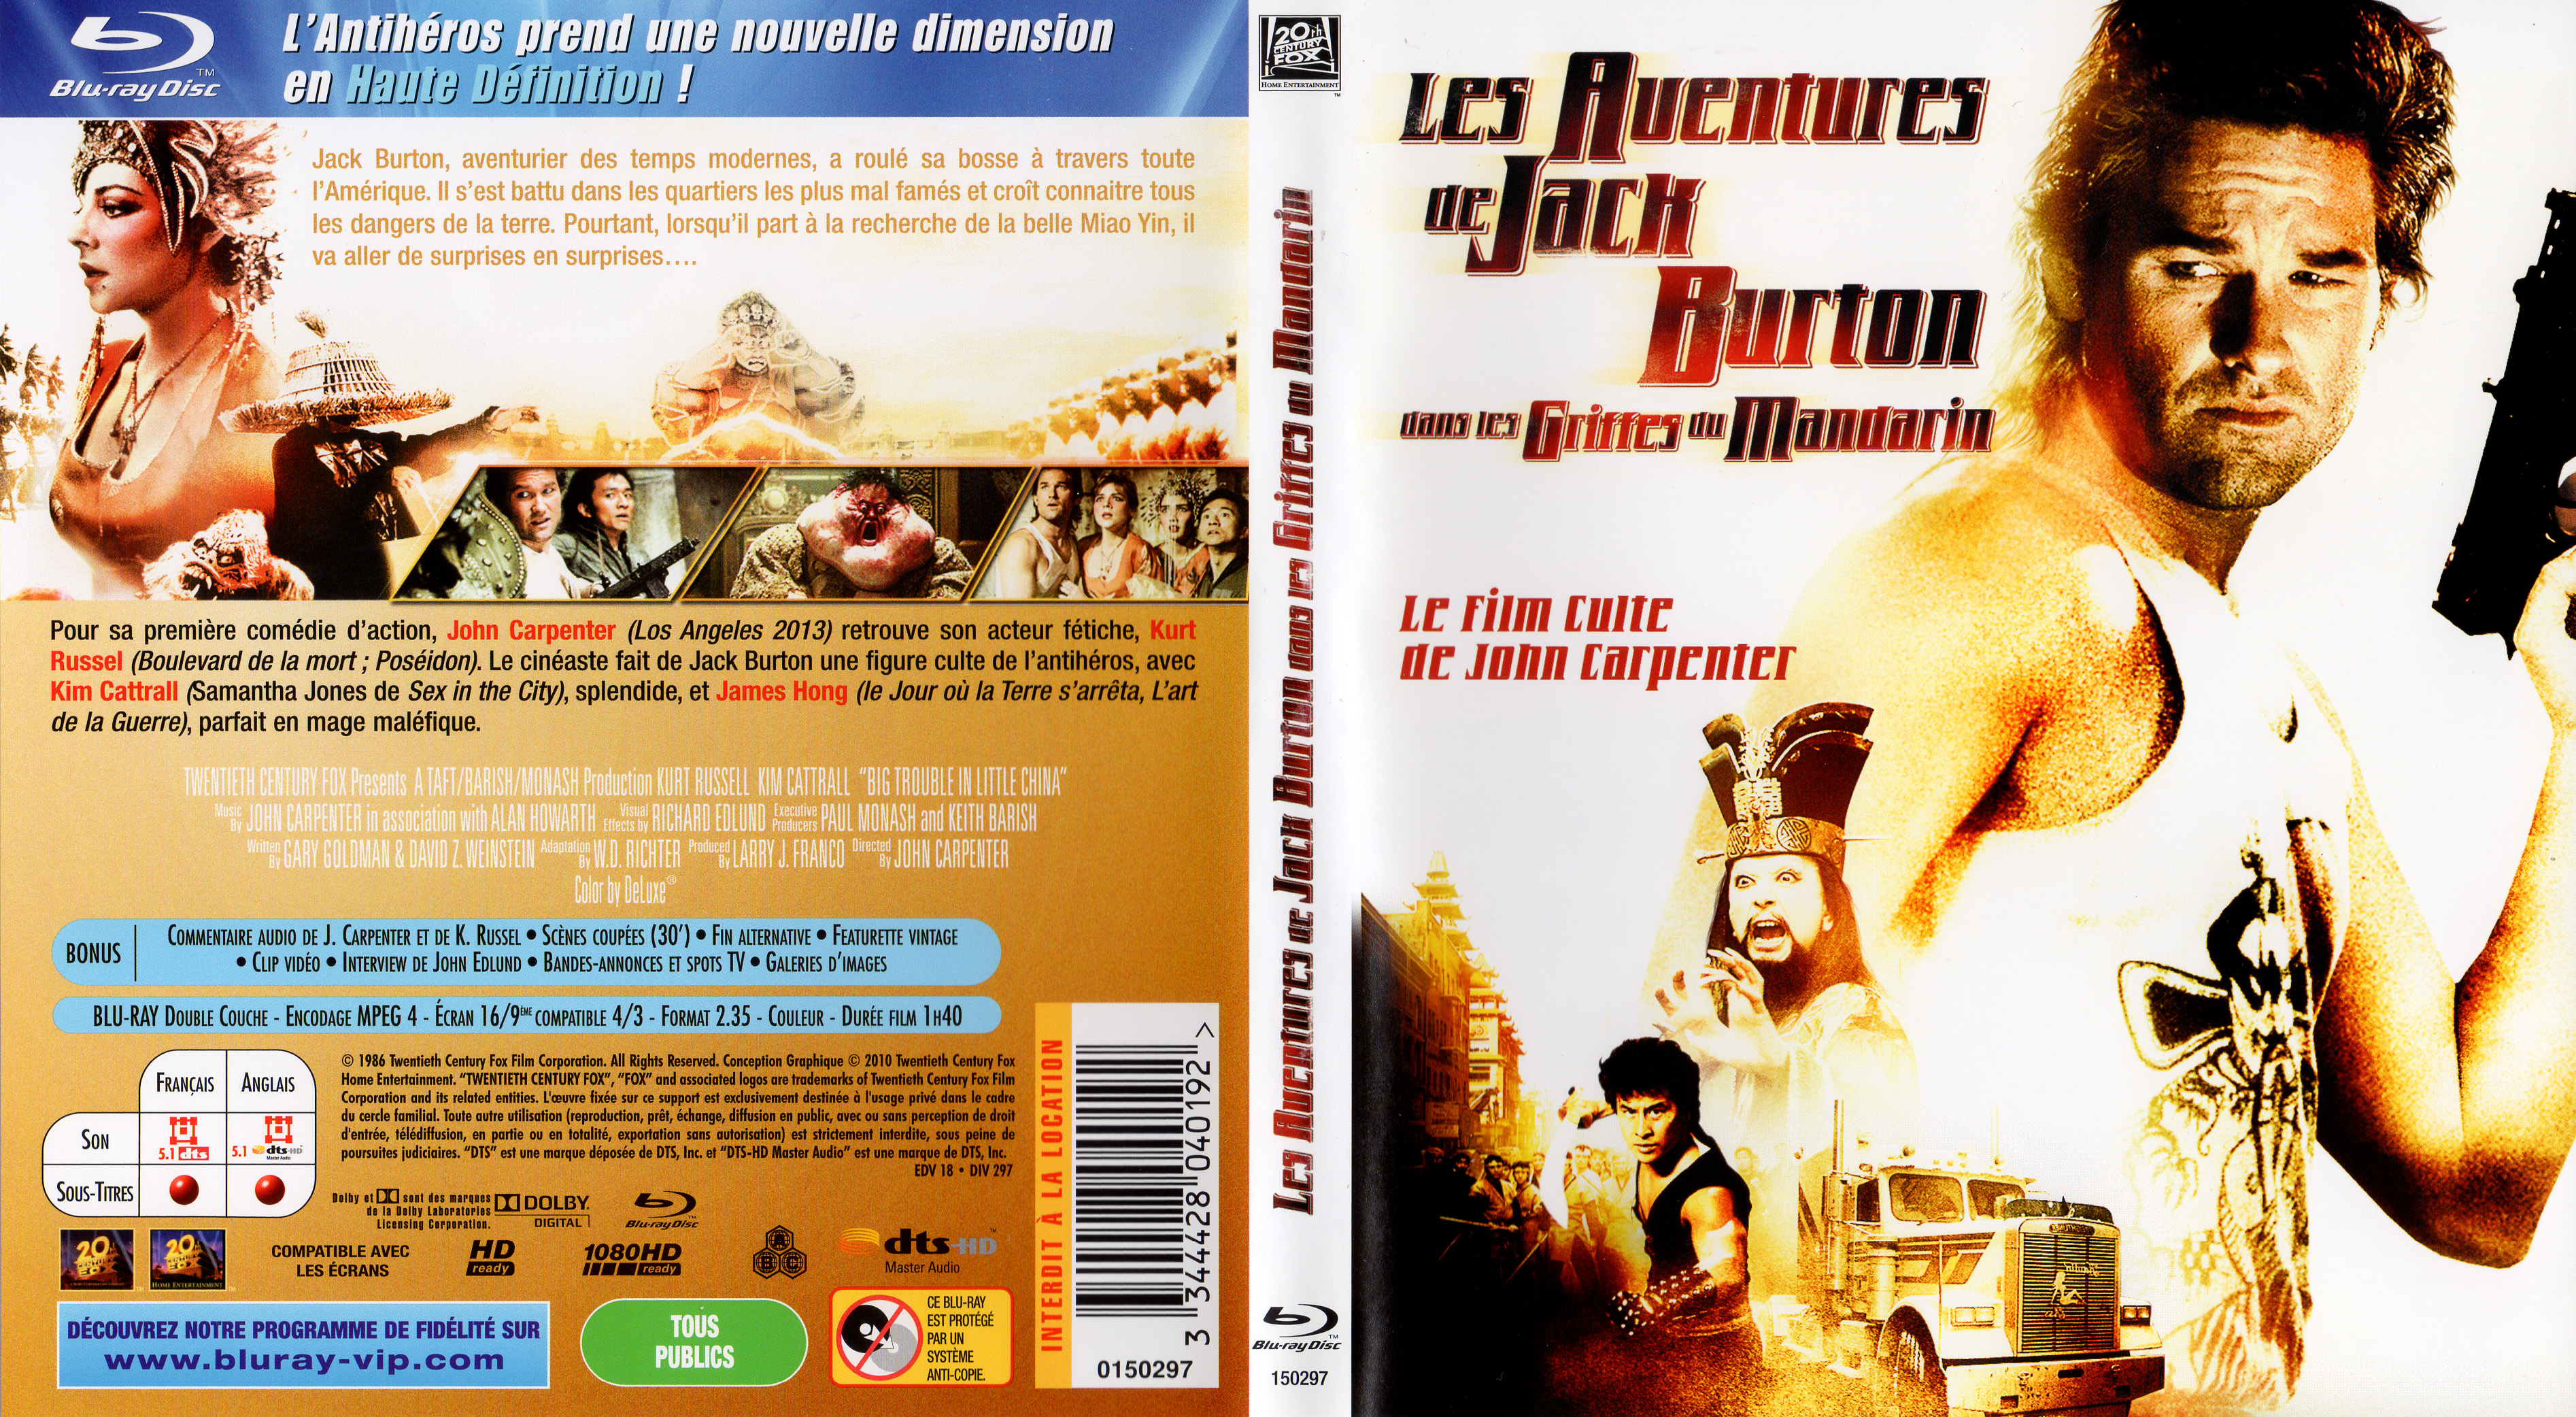 Jaquette DVD Les aventures de Jack Burton dans les griffes du mandarin (BLU RAY) v2